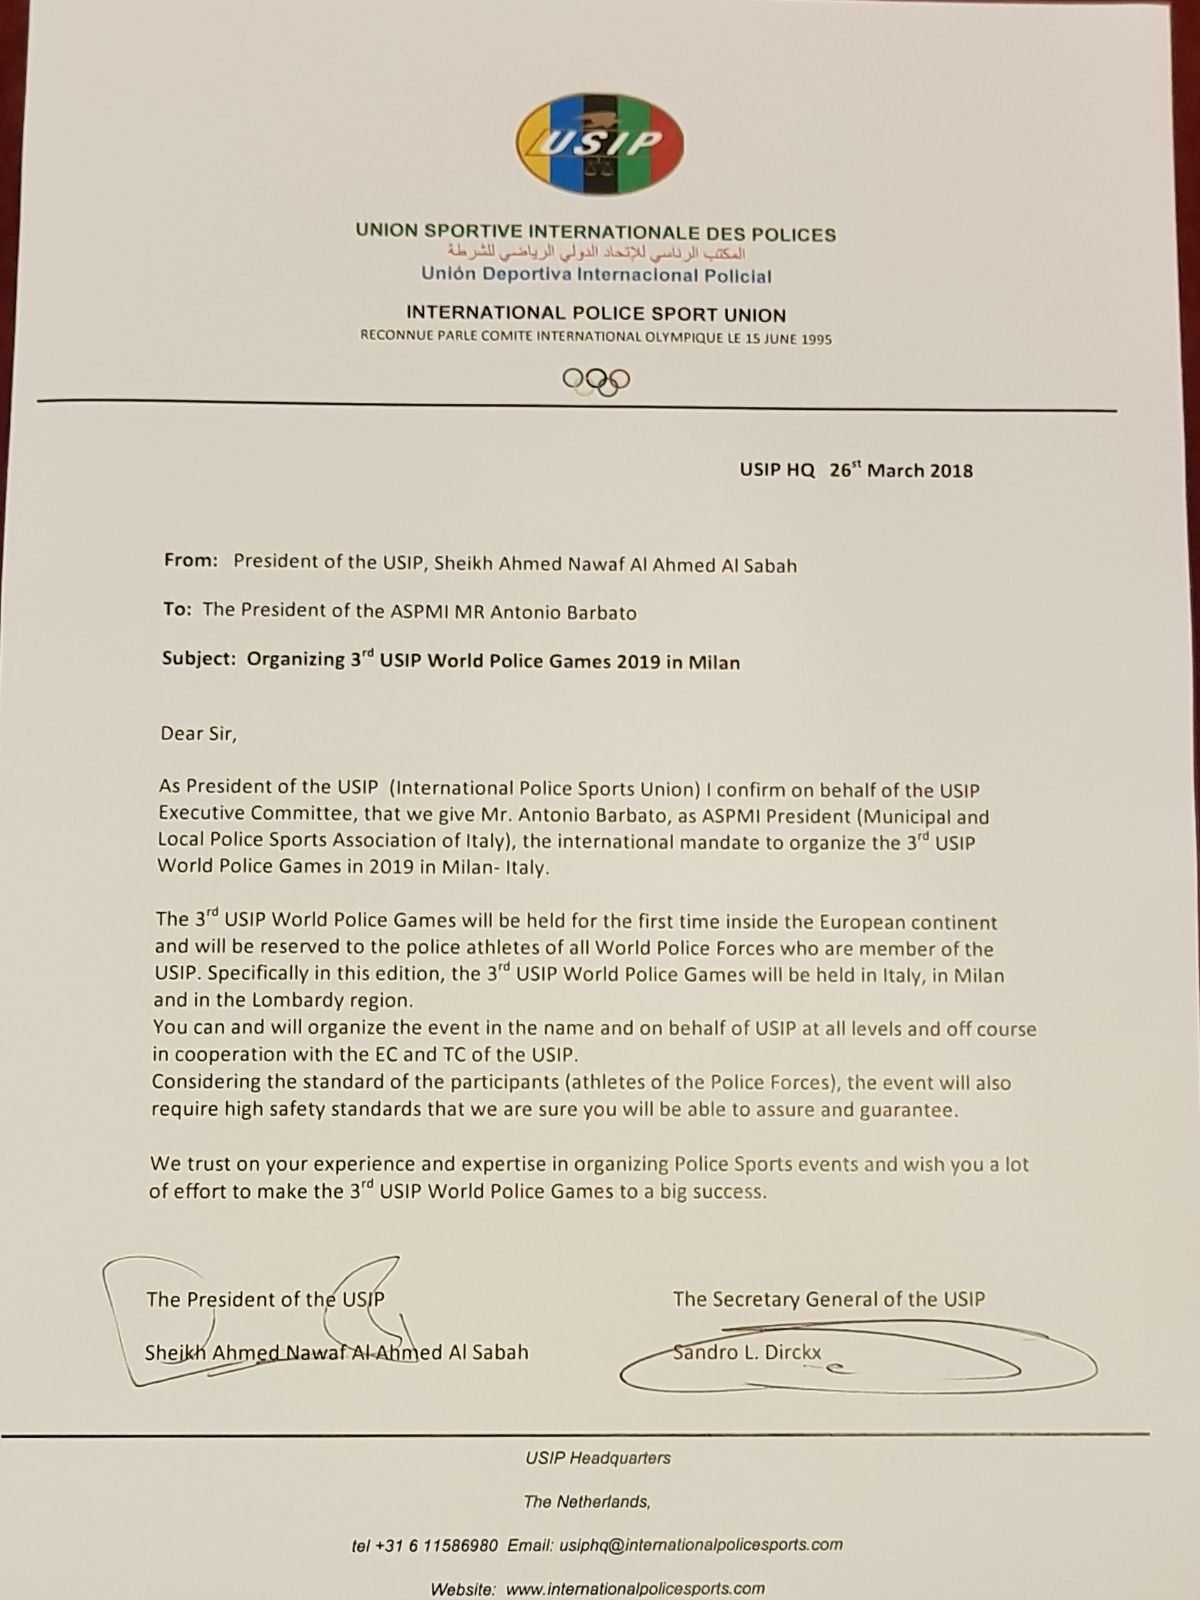 lettera mandato internazionale conferito ad Antonio Barbato per organizzate in Lombardia i campionati del mondo USIP.